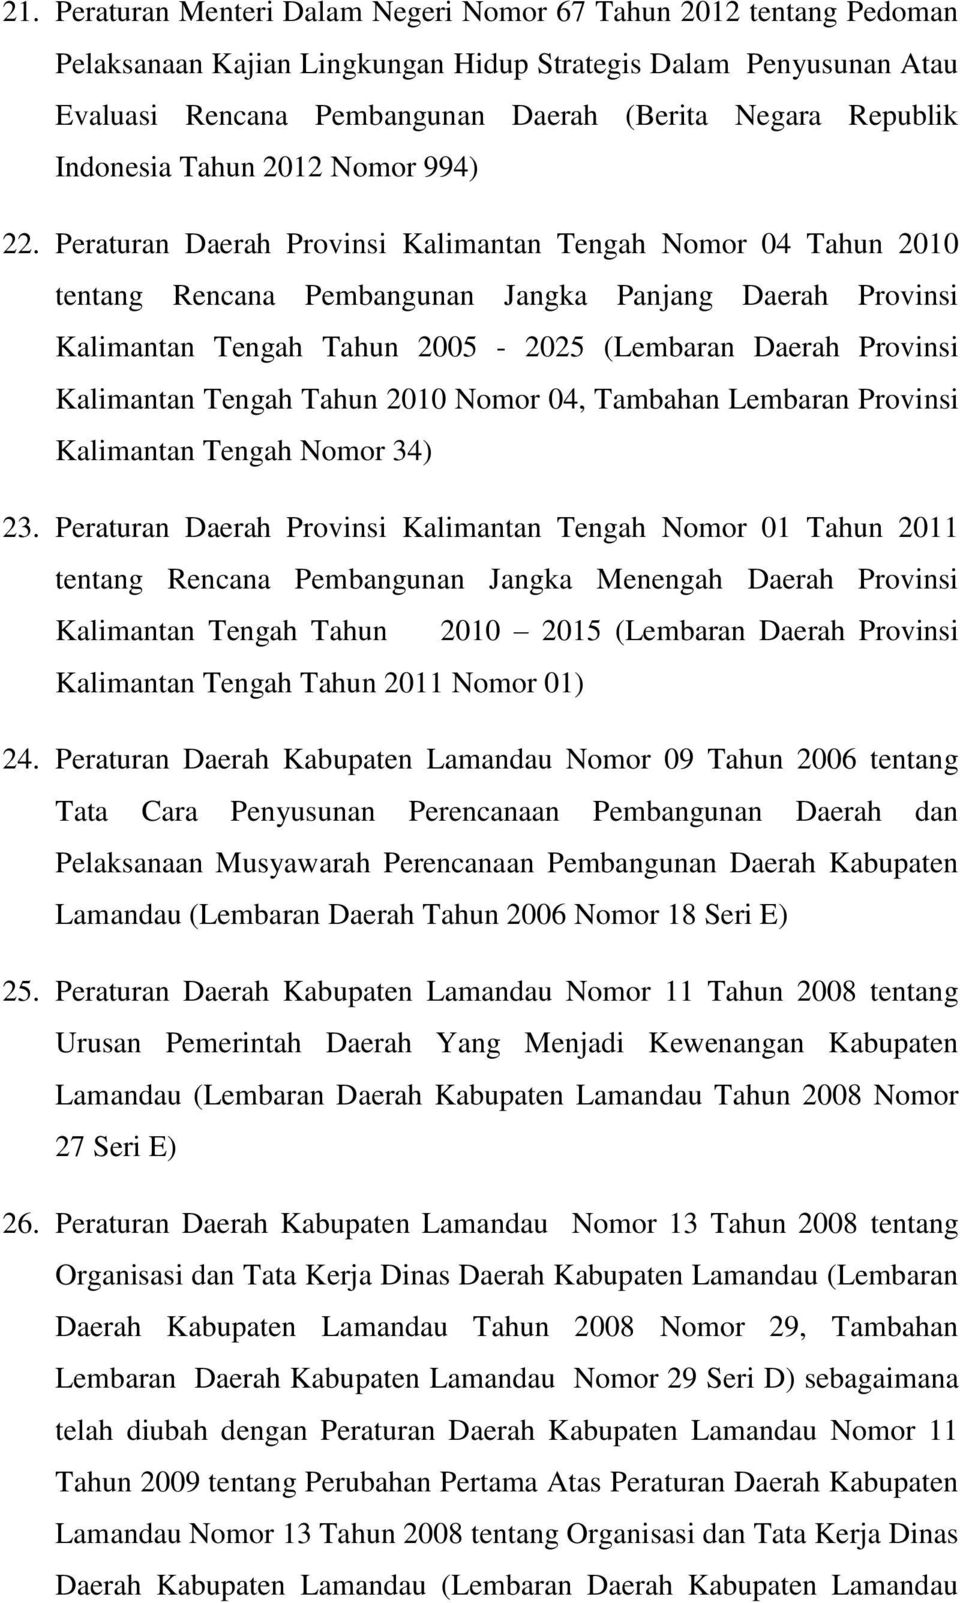 Peraturan Daerah Provinsi Kalimantan Tengah Nomor 04 Tahun 2010 tentang Rencana Pembangunan Jangka Panjang Daerah Provinsi Kalimantan Tengah Tahun 2005-2025 (Lembaran Daerah Provinsi Kalimantan